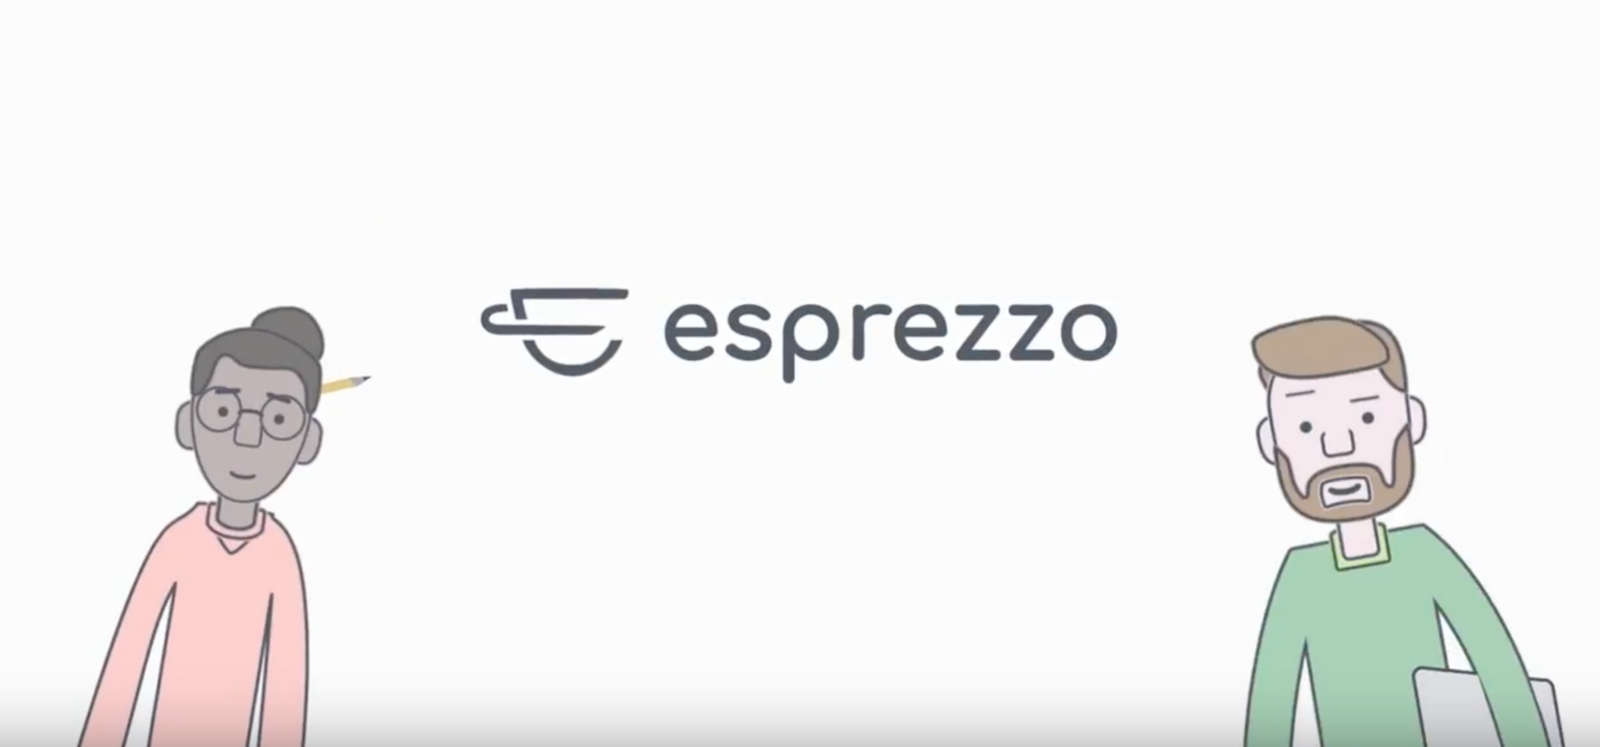 esprezzo-devs-founding-post